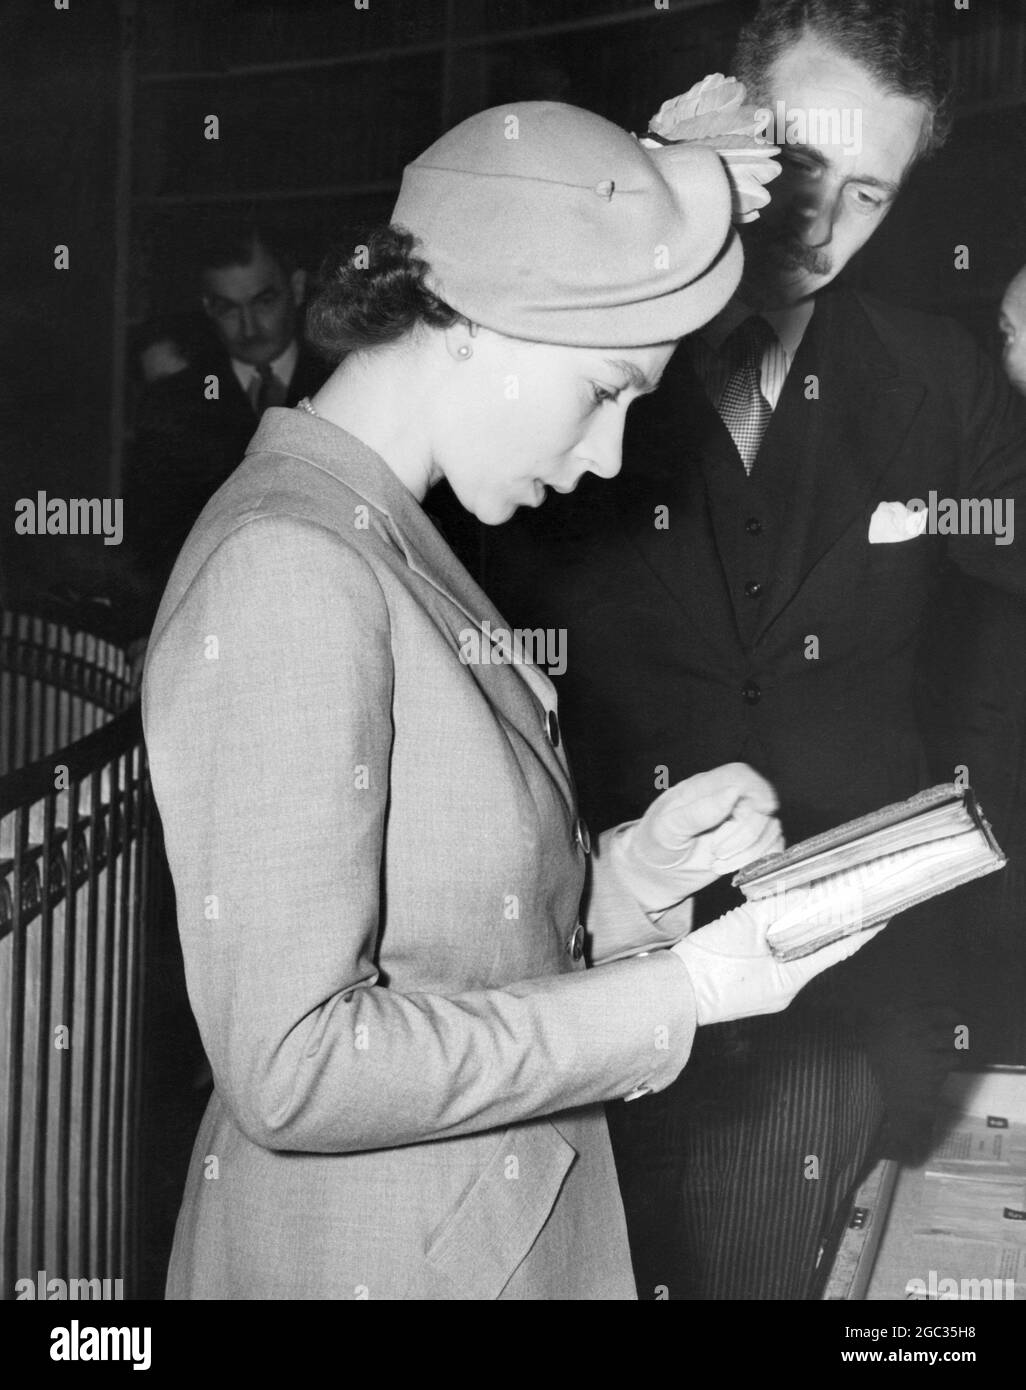 La Reine (Elizabeth II) a visité le Register House, à Édimbourg, où se trouvent des documents écossais et des documents historiques et où se trouve un musée dans la Dome Gallery. Ici, elle est dans la Dome Gallery regardant un livre écrit à la main par Elizabeth I (bonne reine Bess) quand elle était une princesse vers le 1545 27 juin 1952 Banque D'Images